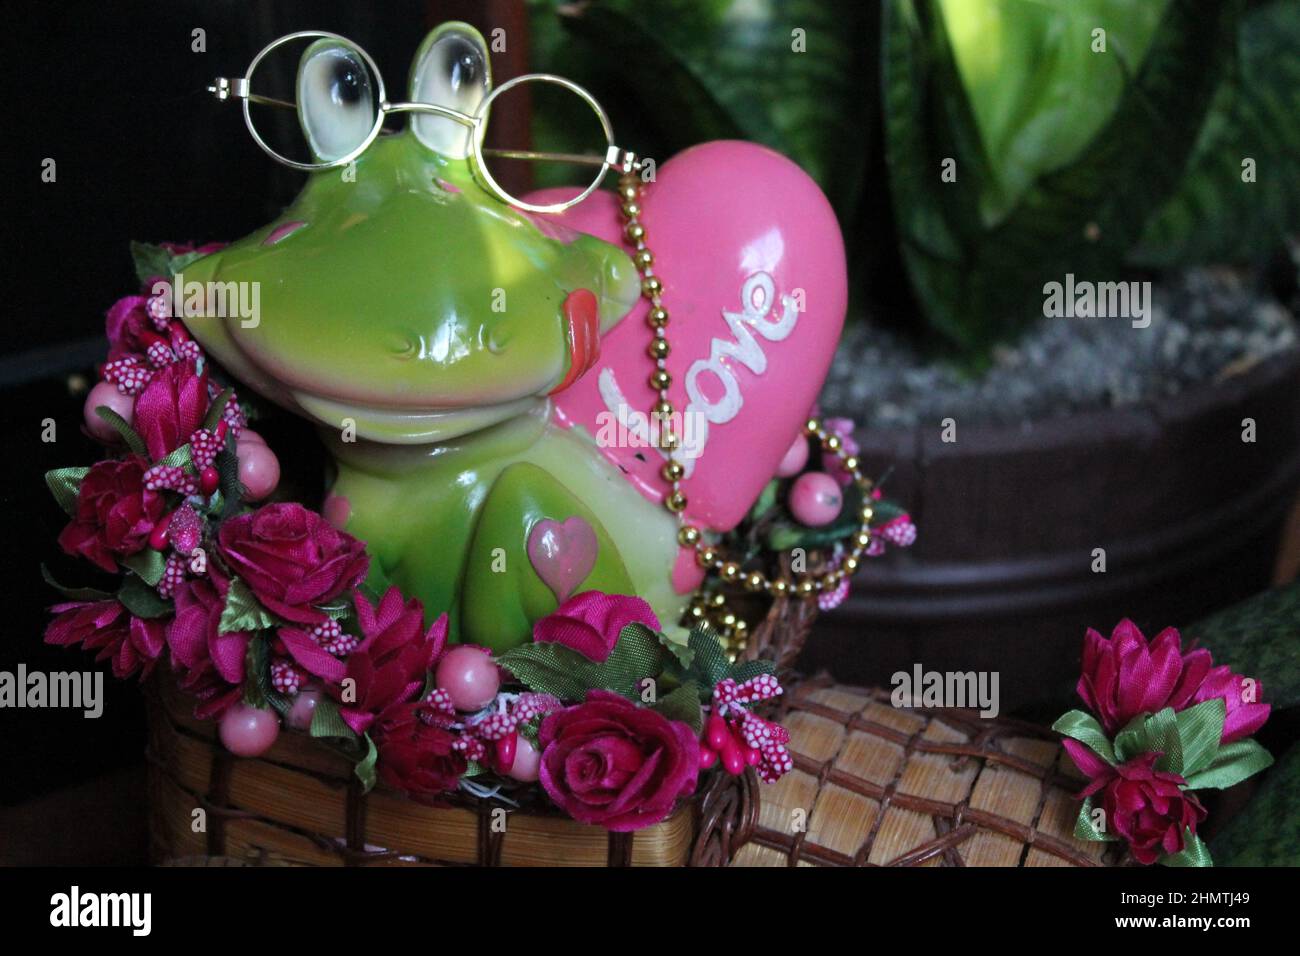 grande rana verde con cuore rosa bel regalo per san valentino Foto Stock